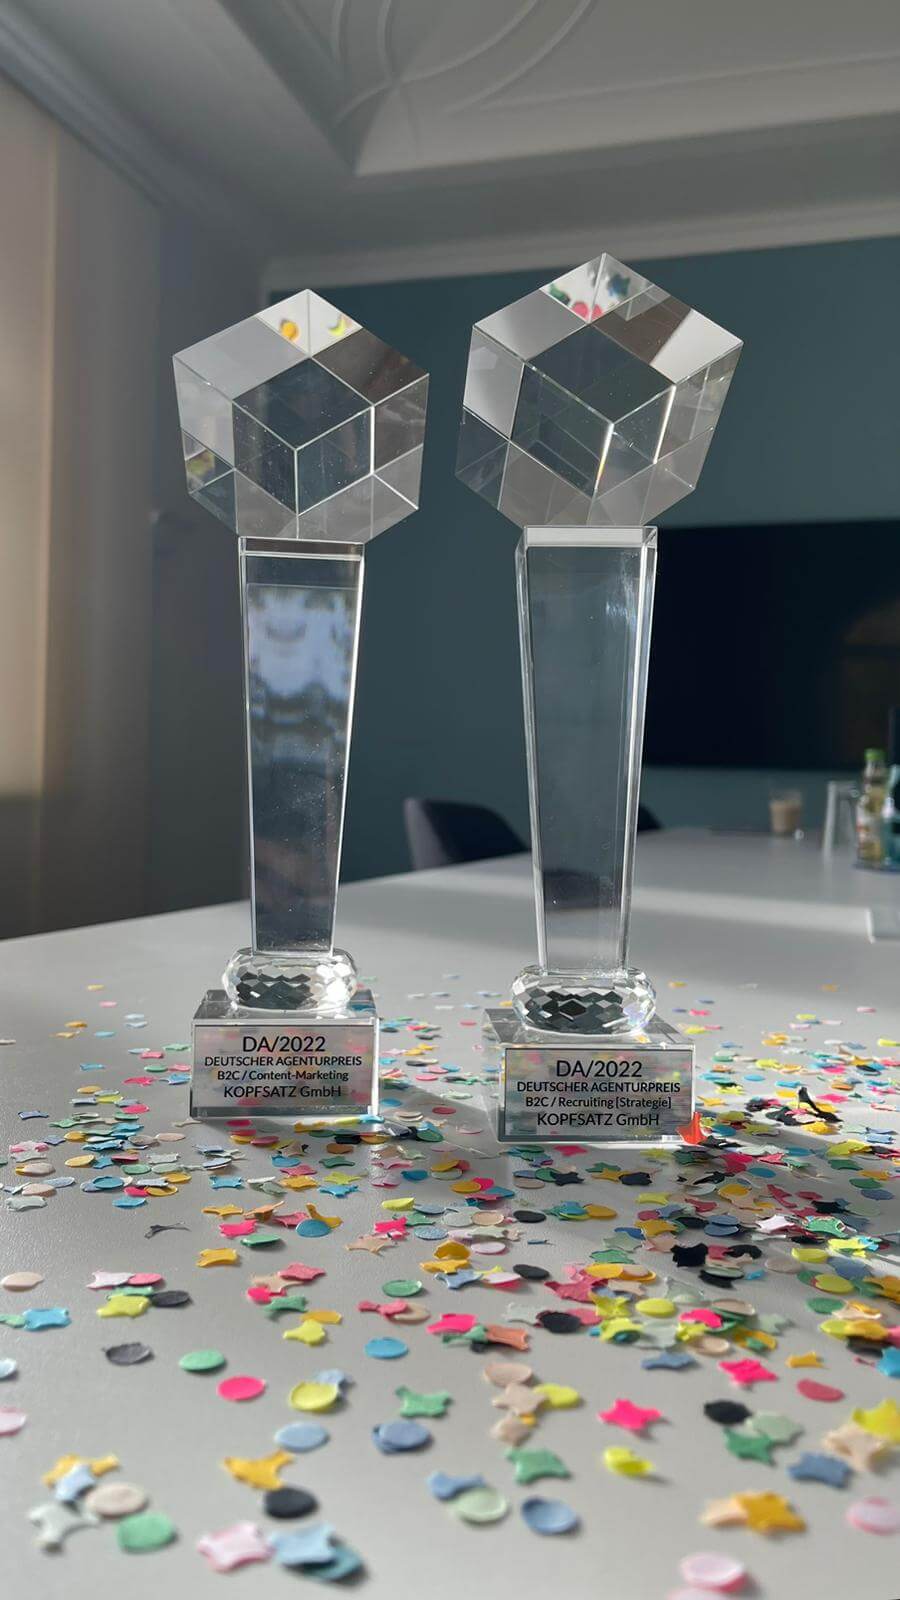 KOPFSATZ GmbH ist Award Gewinner Agentur Deutscher Agenturpreis 2022